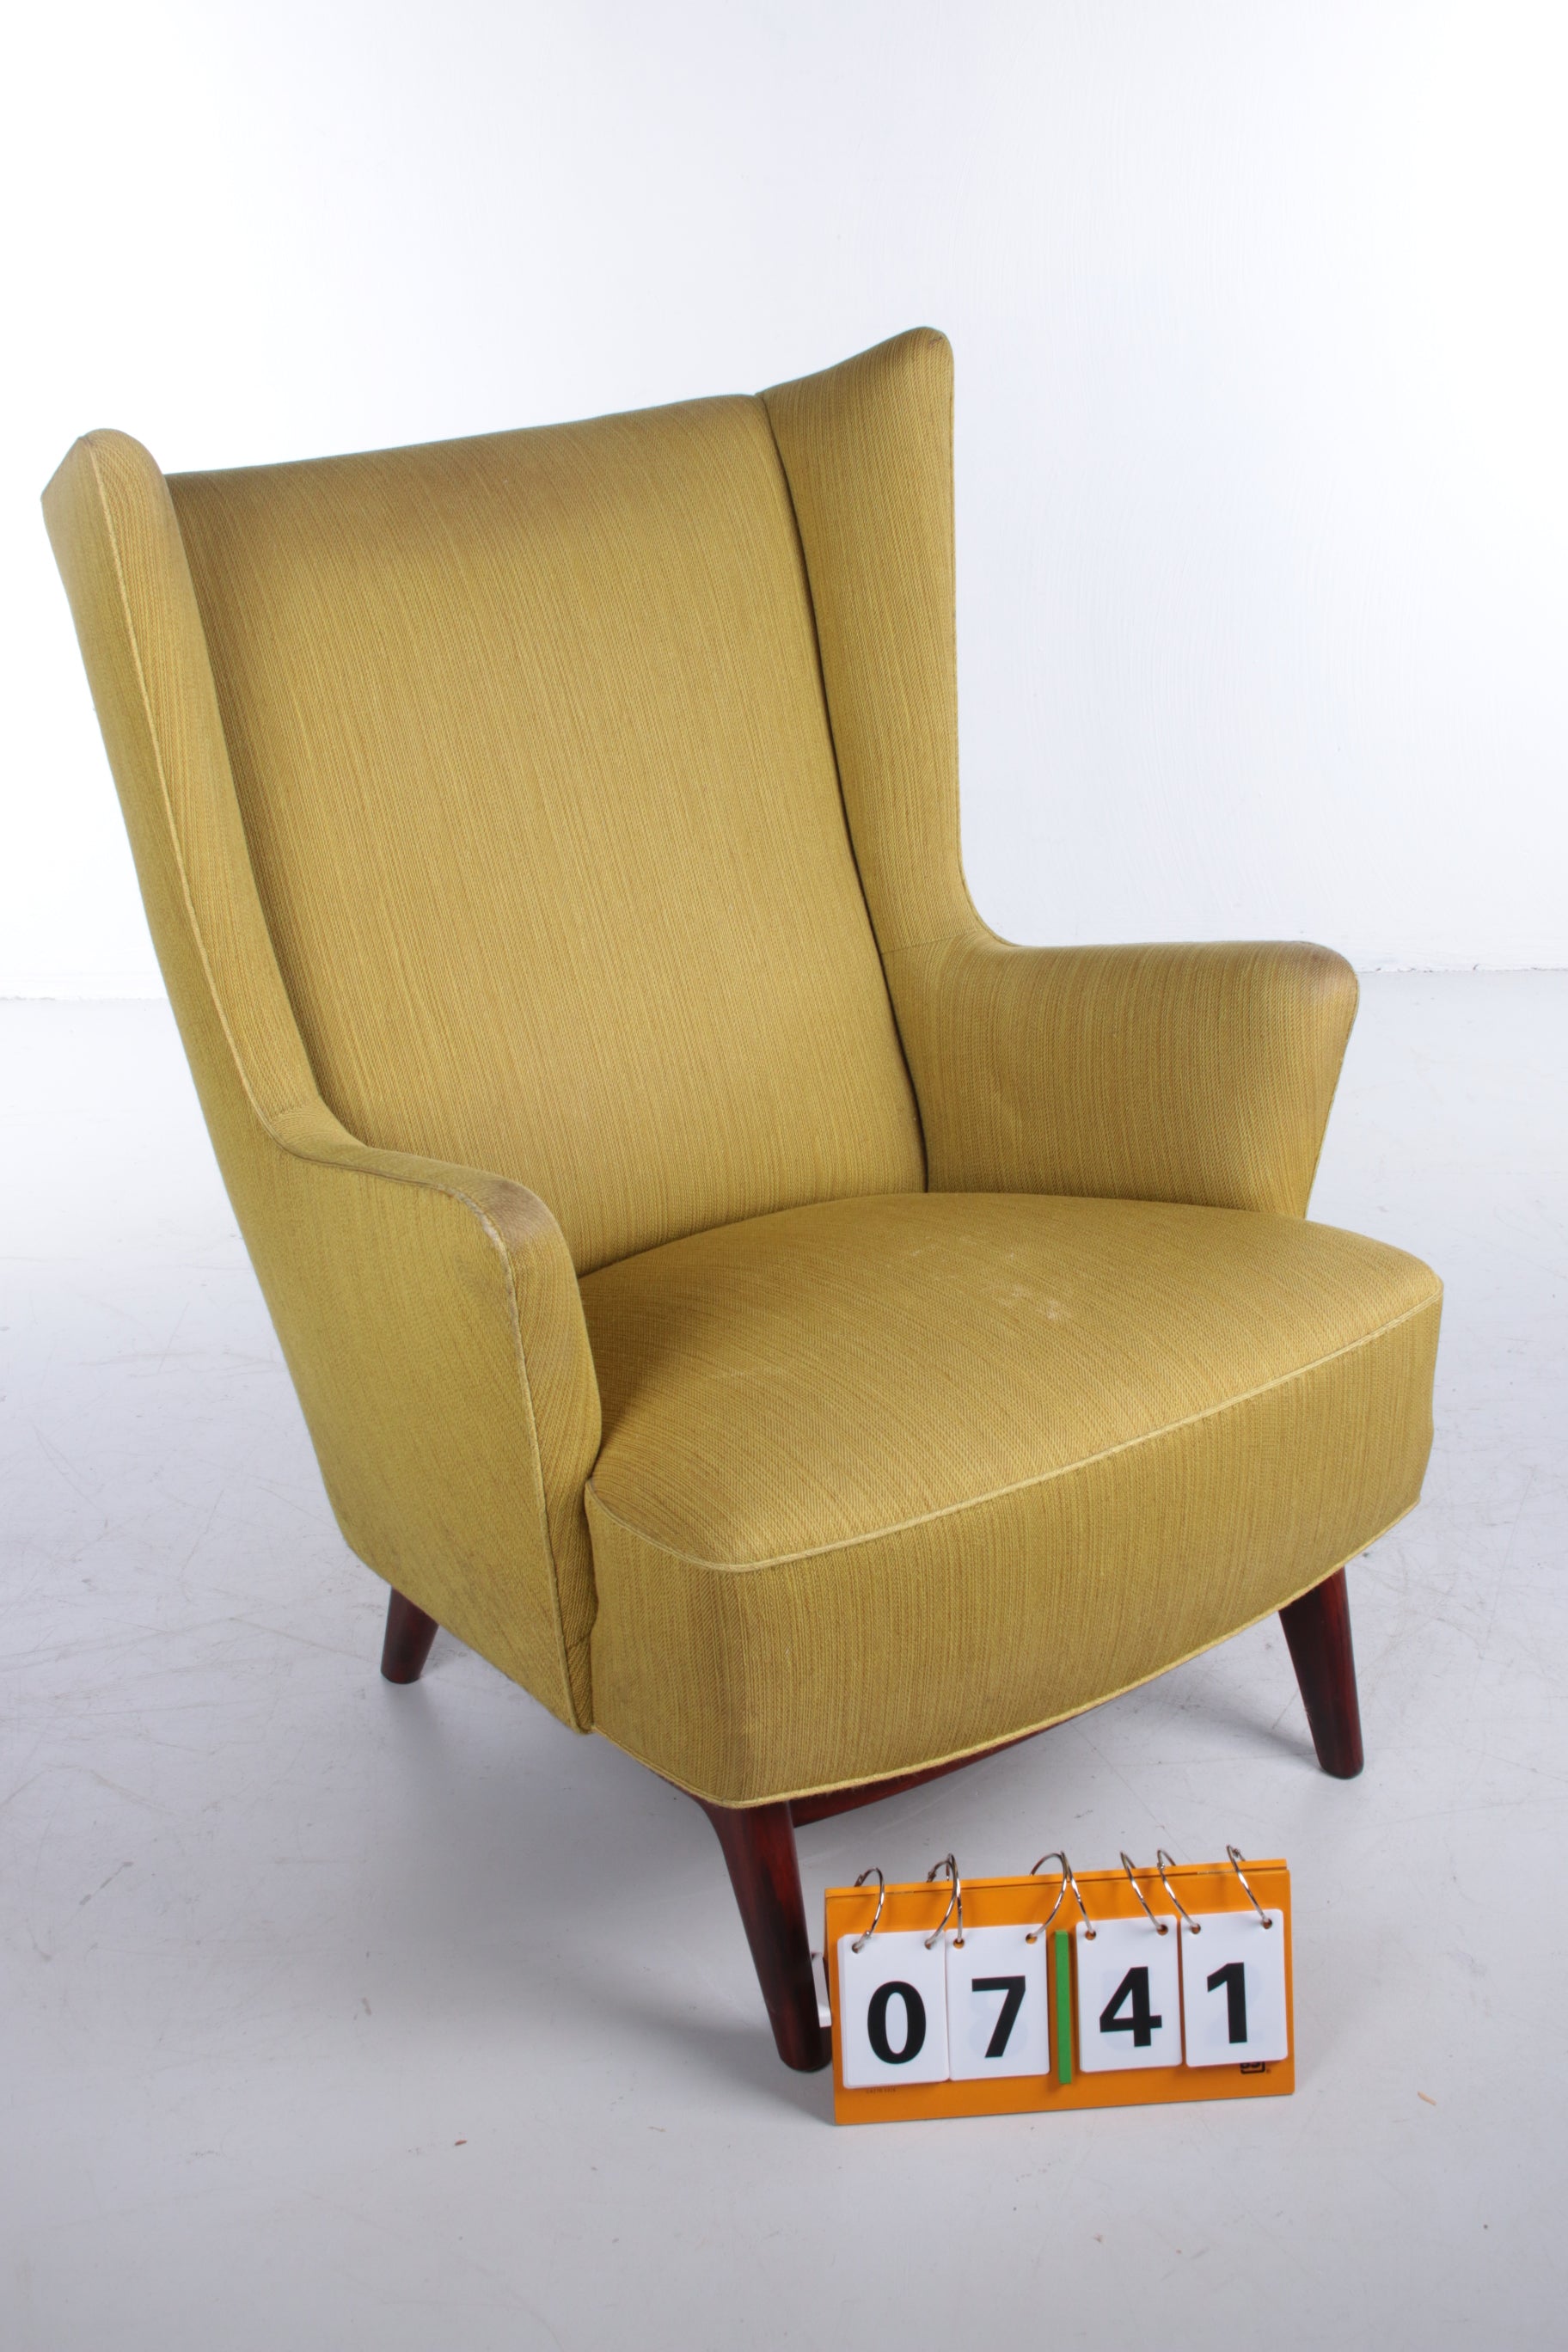 Deense fauteuil met pallisander houten onderstel mosgroen voorkant schuin